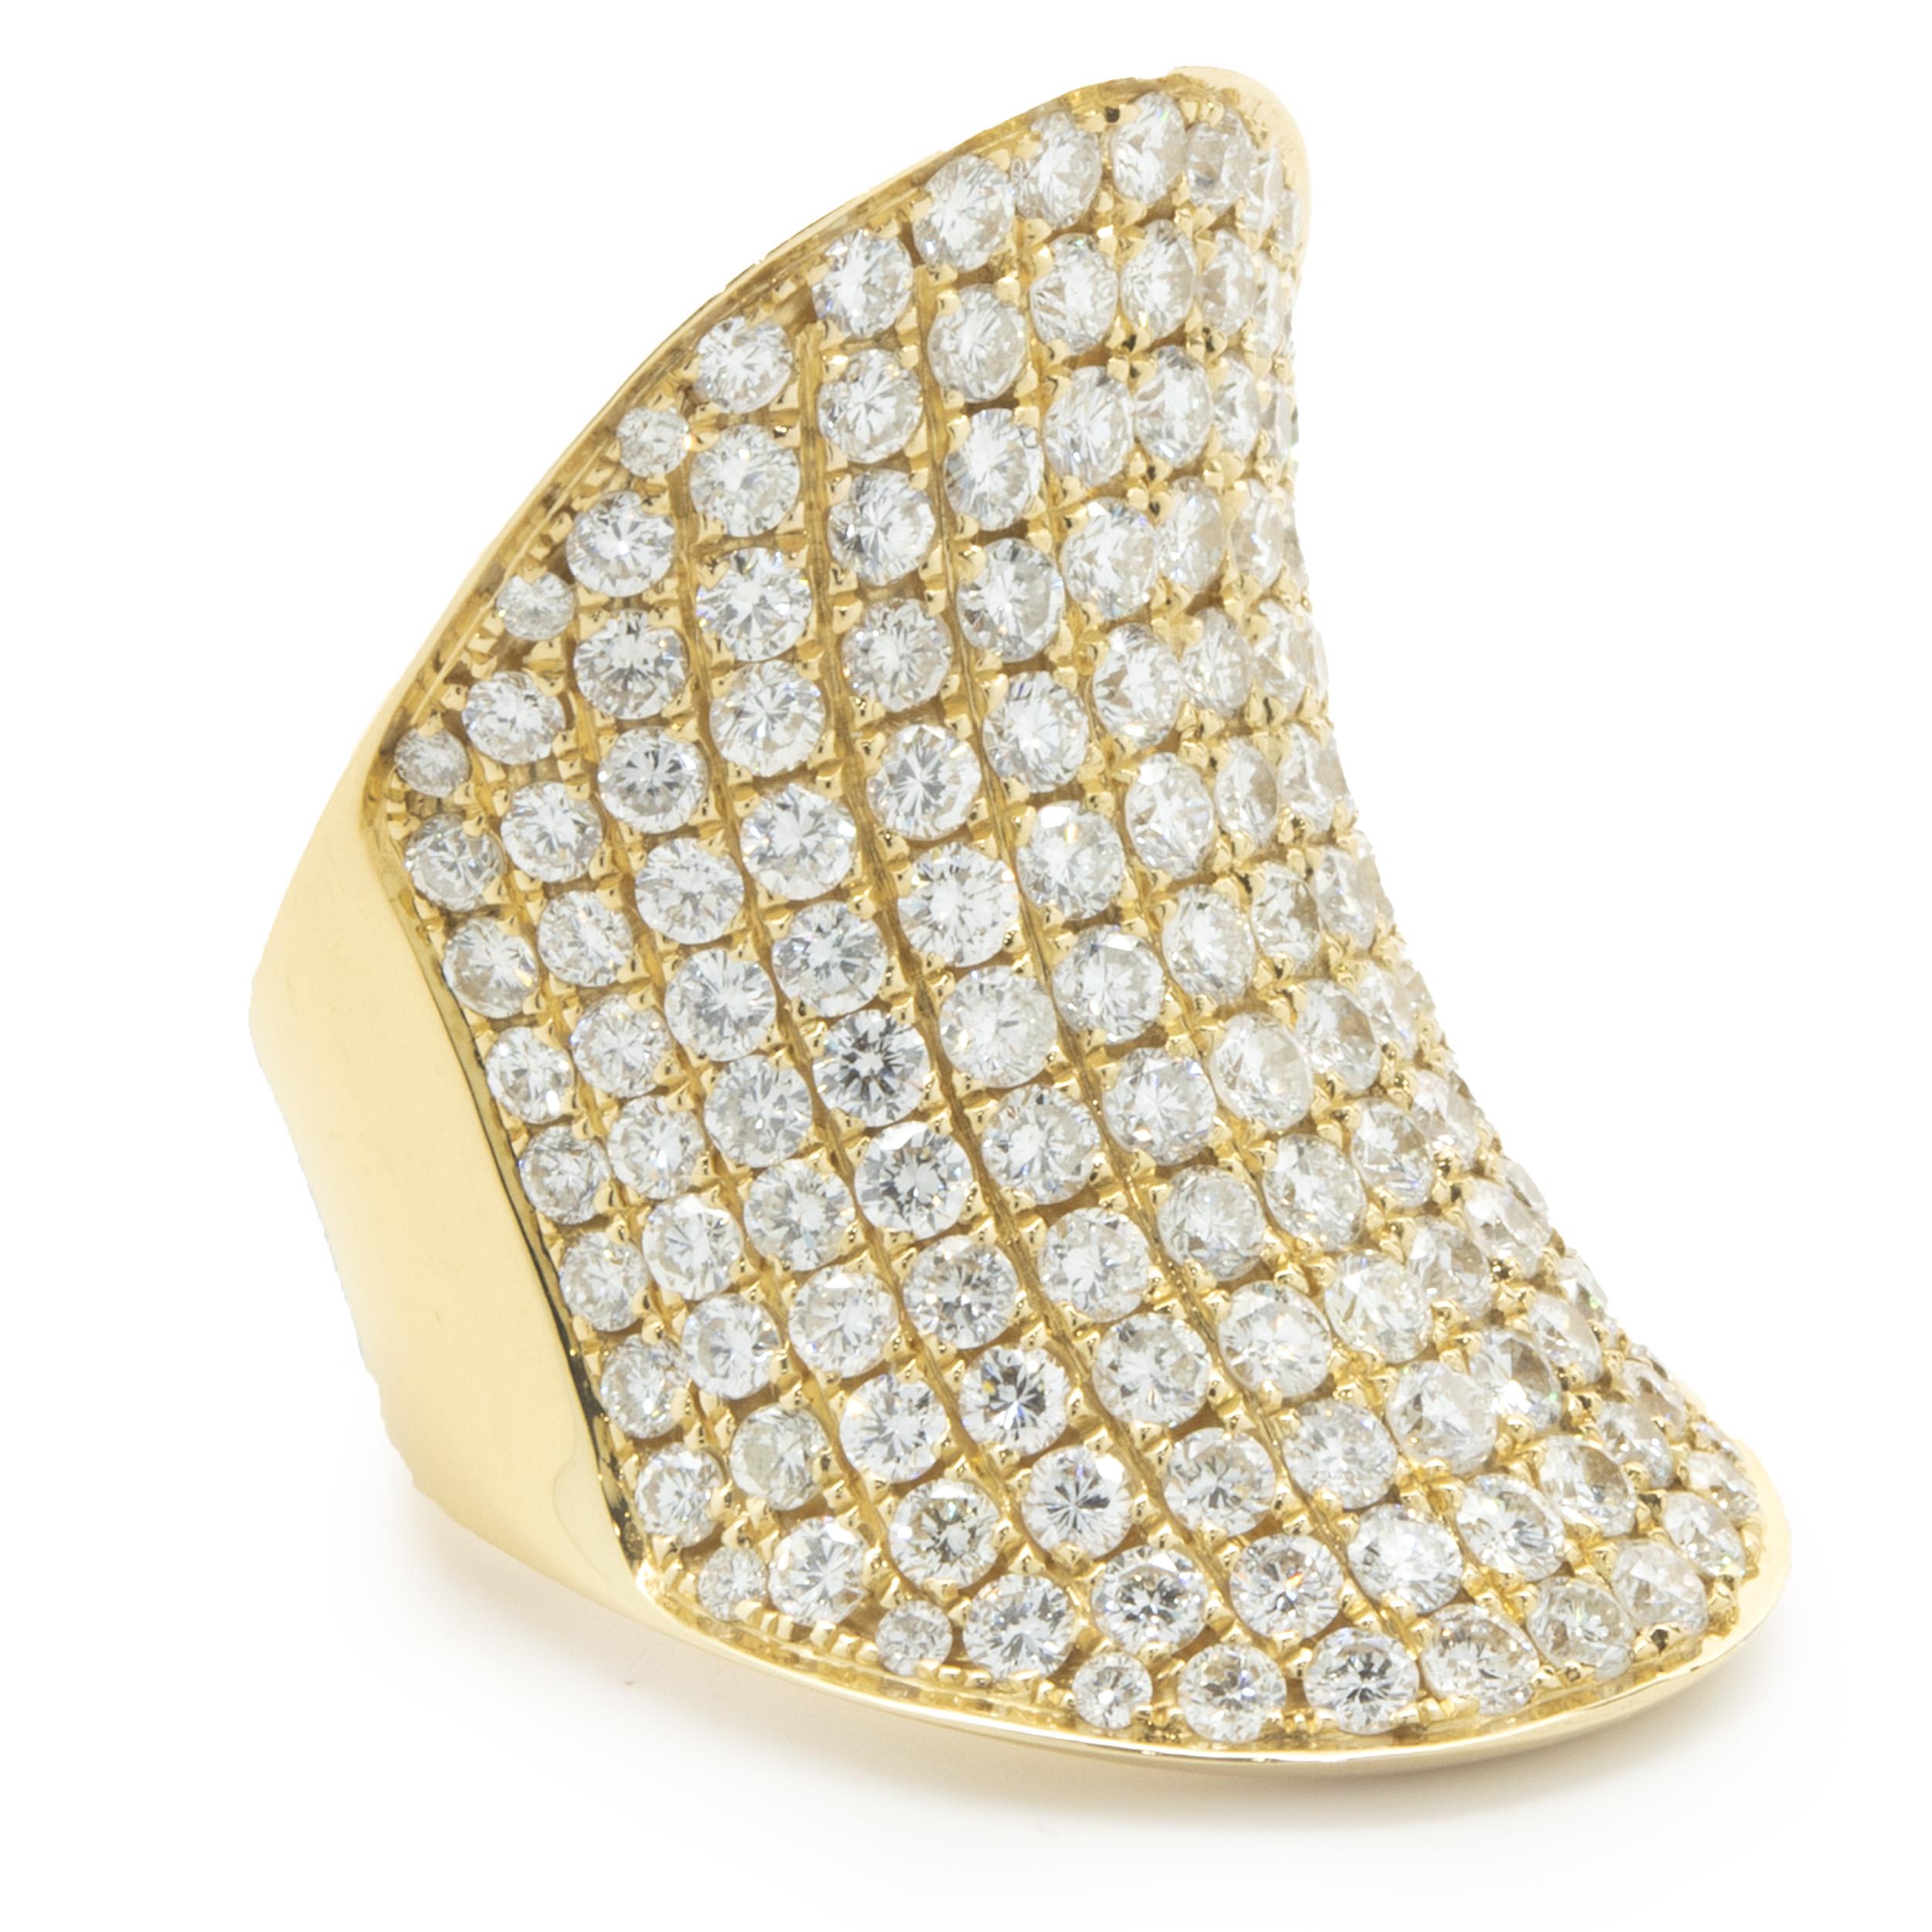 Designer: kundenspezifisch
MATERIAL: 18K Gelbgold
Diamant: 157 runder Brillantschliff = 5,33cttw
Farbe: G
Klarheit: VS2
Gewicht: 24,38 Gramm
